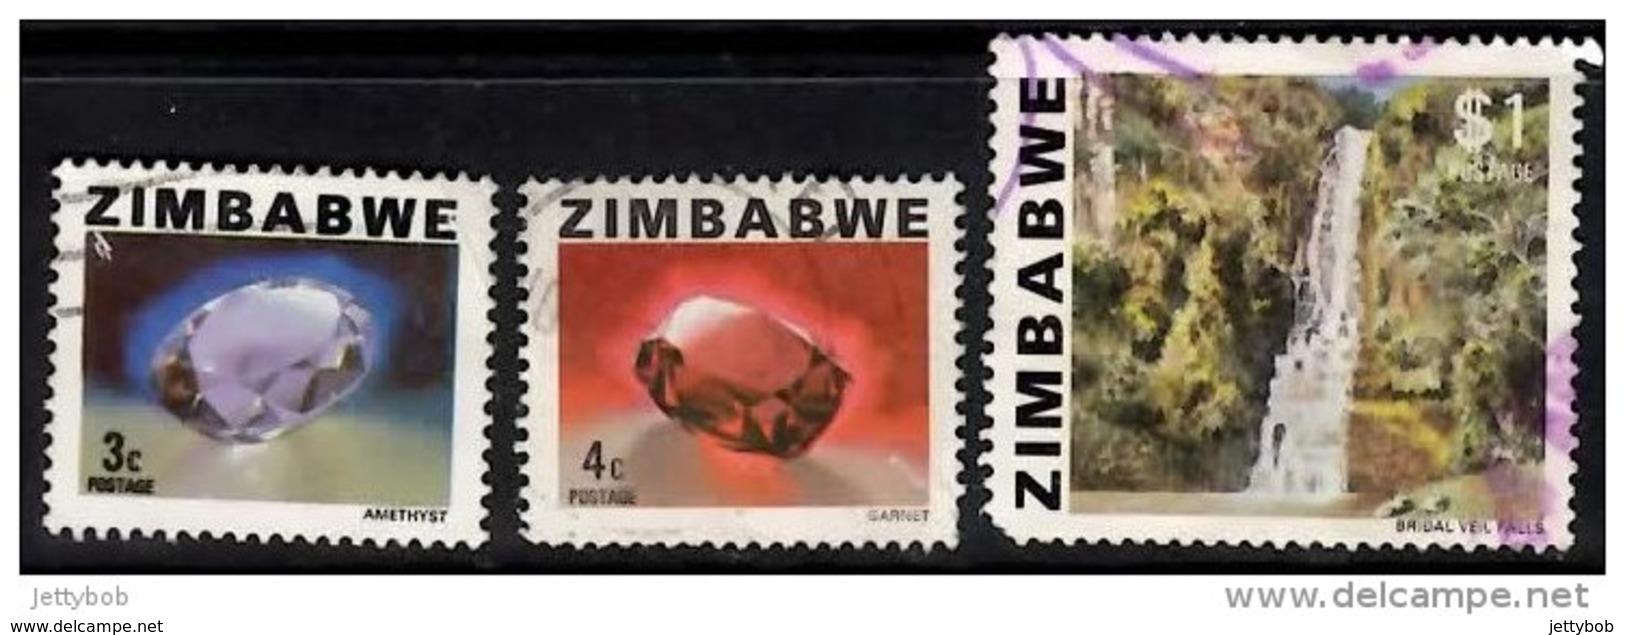 ZIMBABWE 1980 Definitives 3c, 4c, $1 Used - Zimbabwe (1980-...)